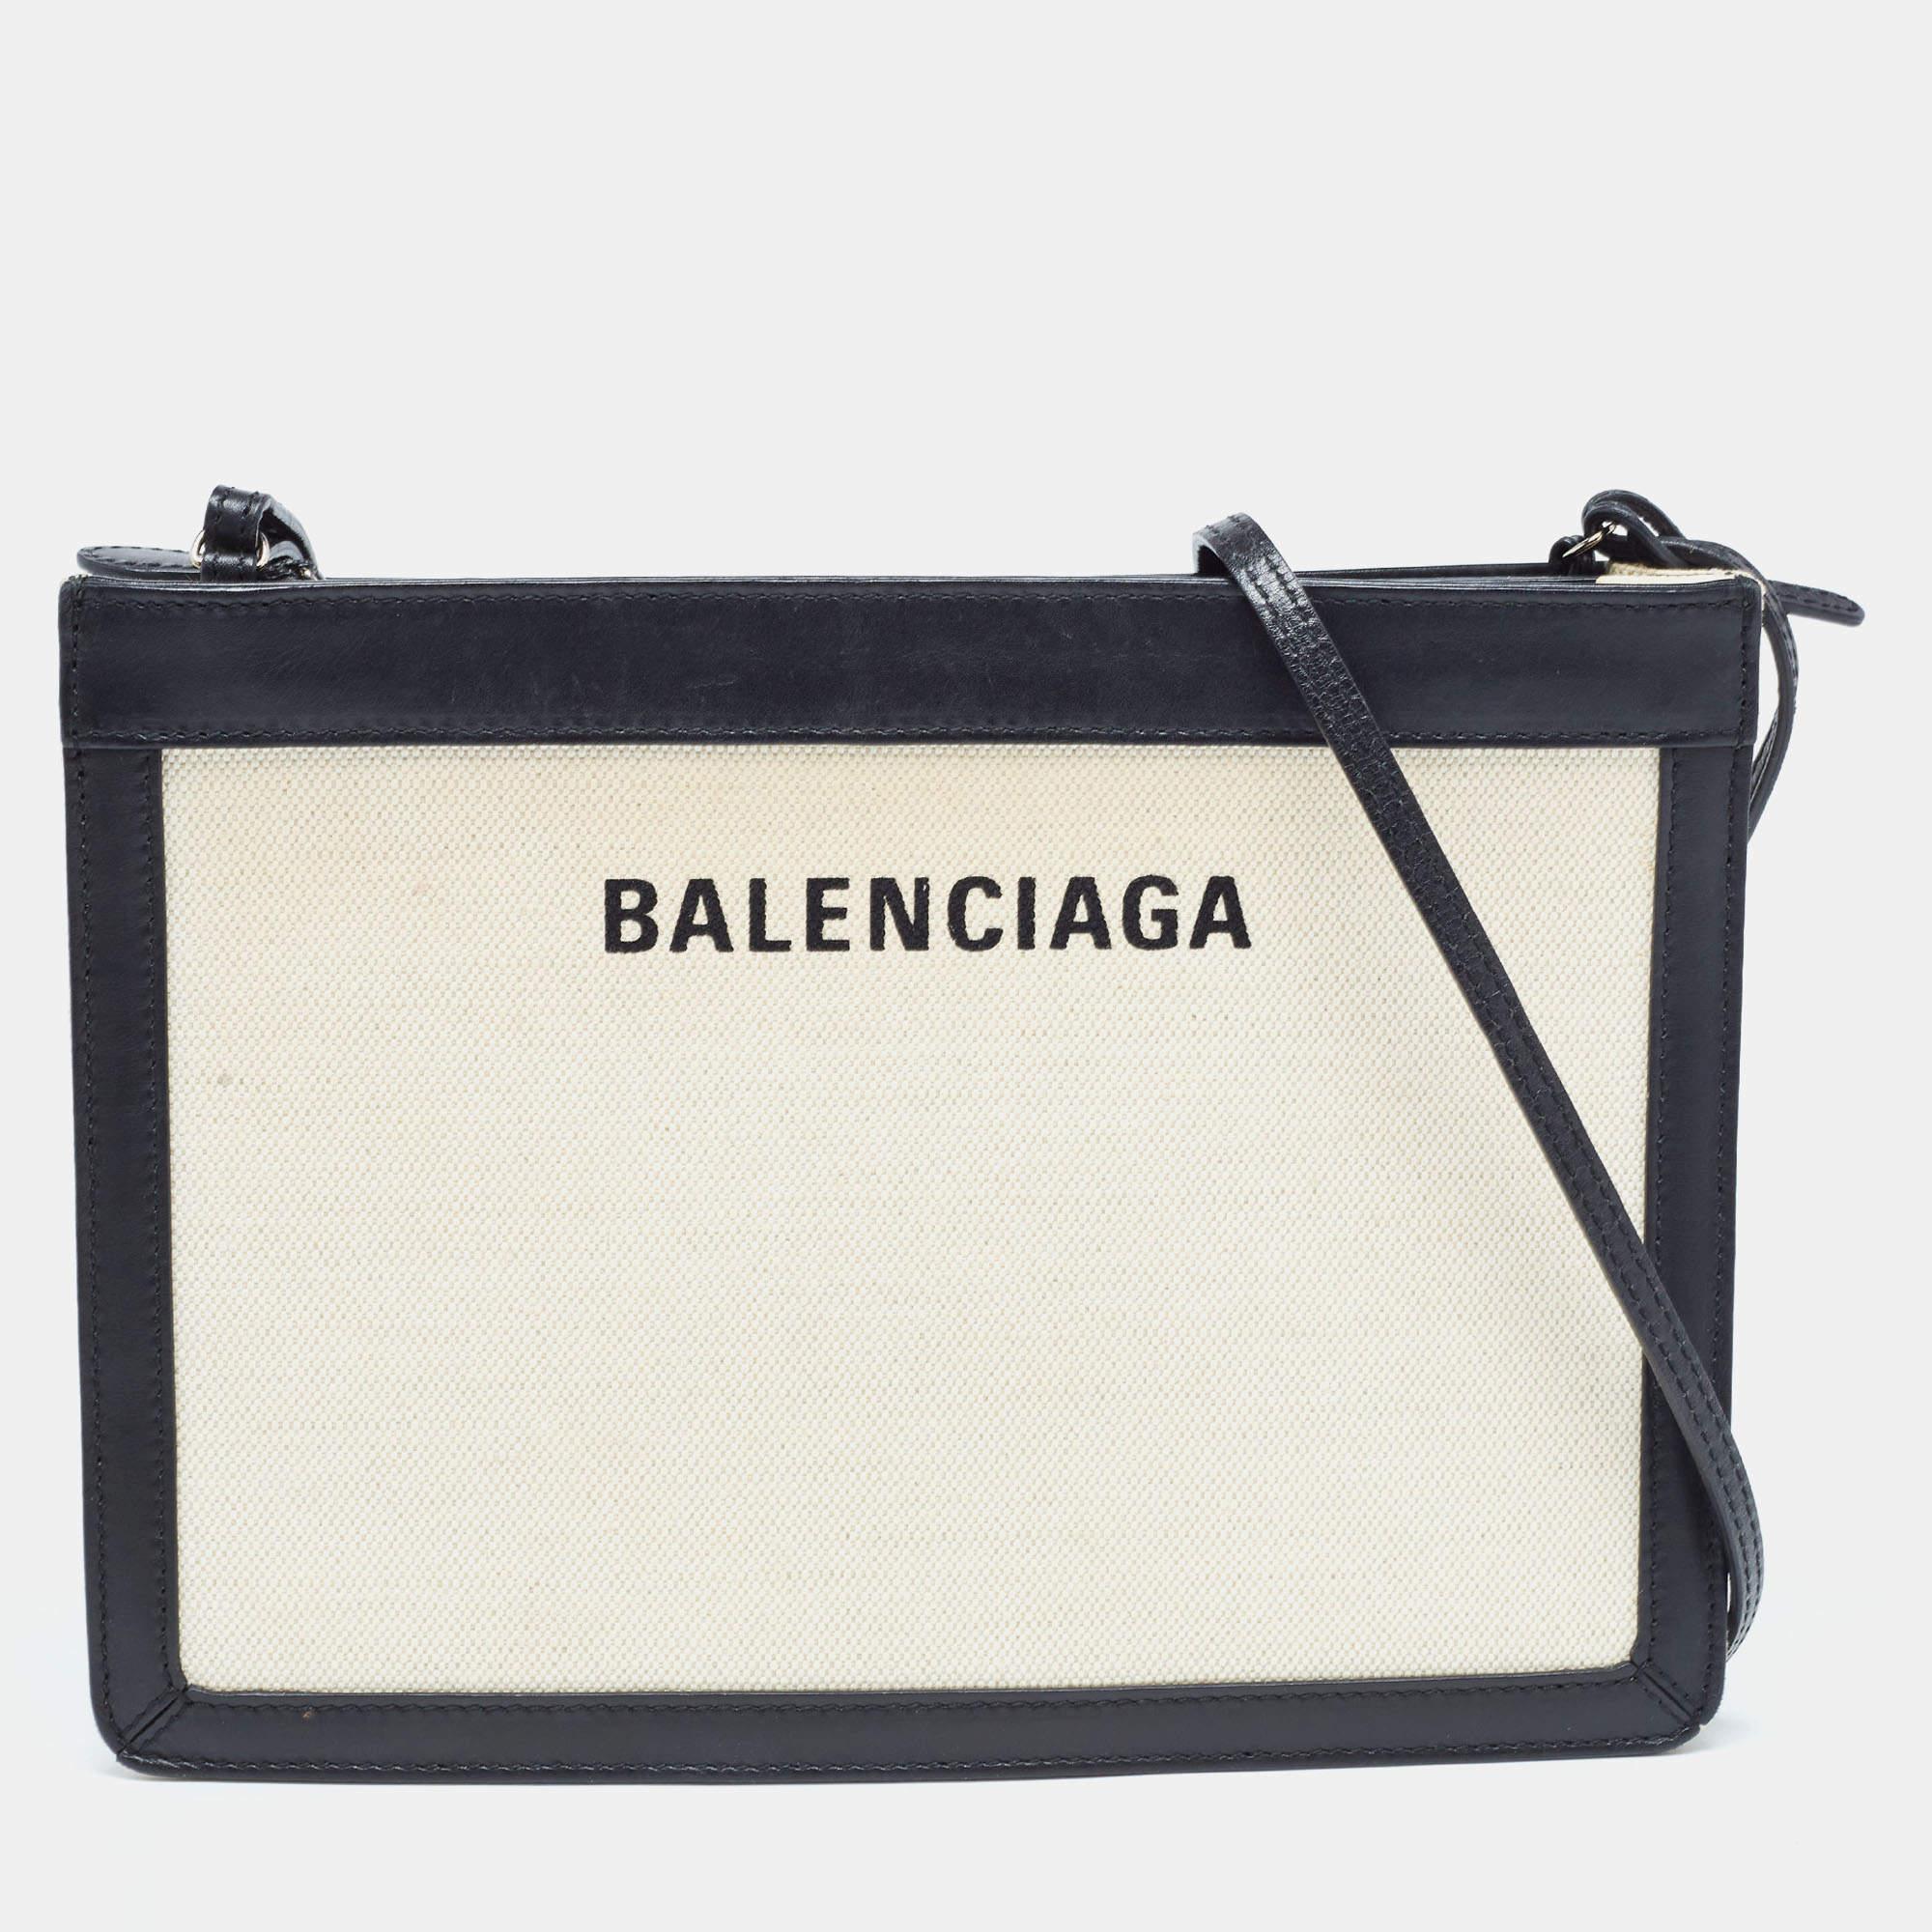 Diese hübsche Crossbody-Tasche von Balenciaga setzt einen stilvollen Akzent für Ihren Tageslook. Sie ist außen aus Segeltuch und Leder, innen aus Segeltuch, hat silberfarbene Beschläge und einen Schulterriemen.

